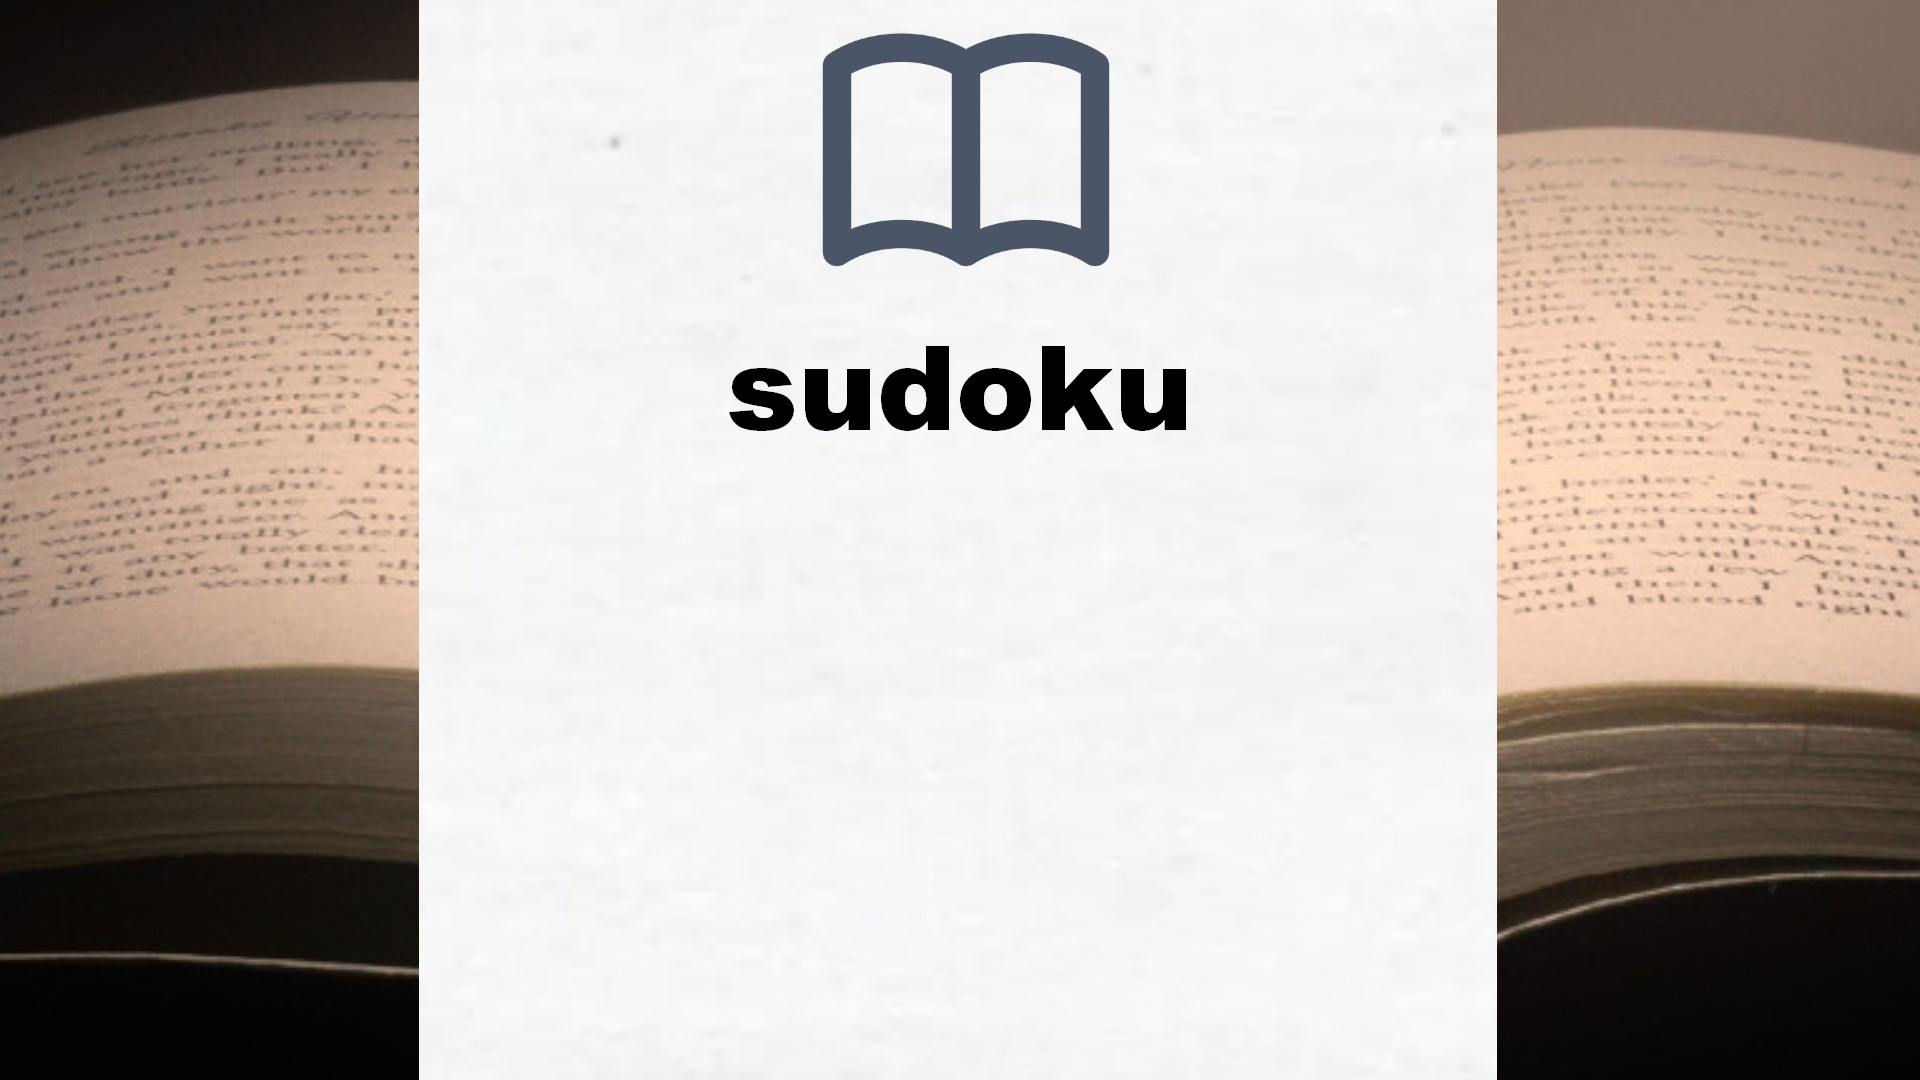 Libros sobre sudoku